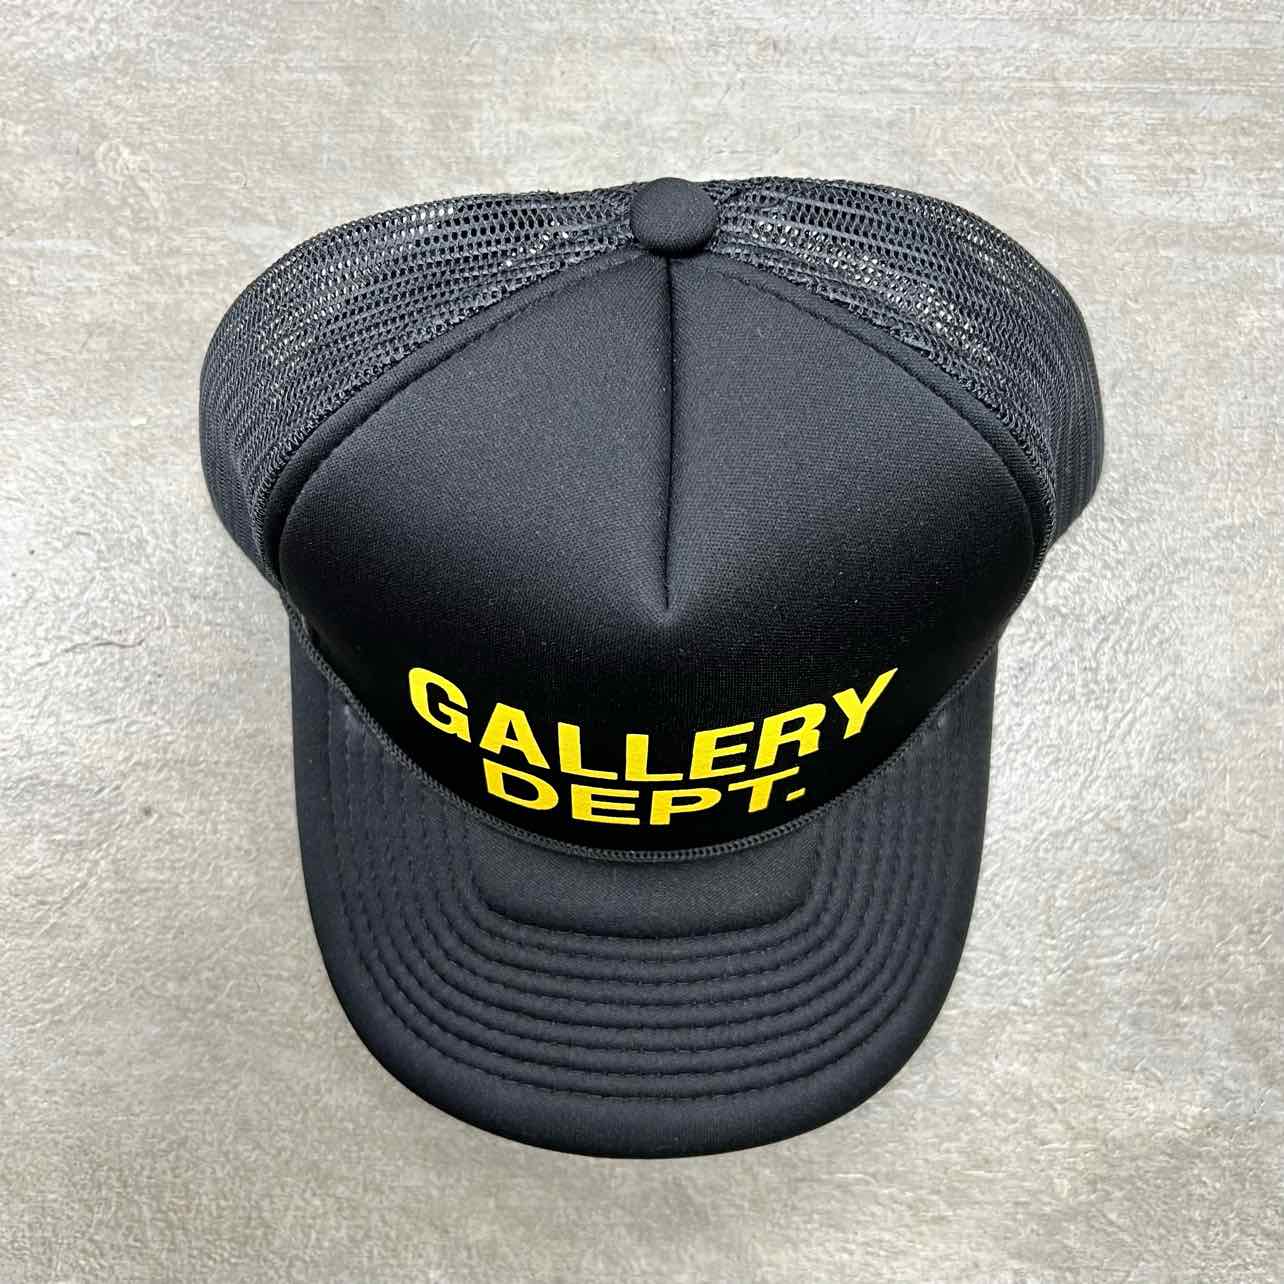 Gallery DEPT. Trucker Hat &quot;YELLOW&quot; New Black